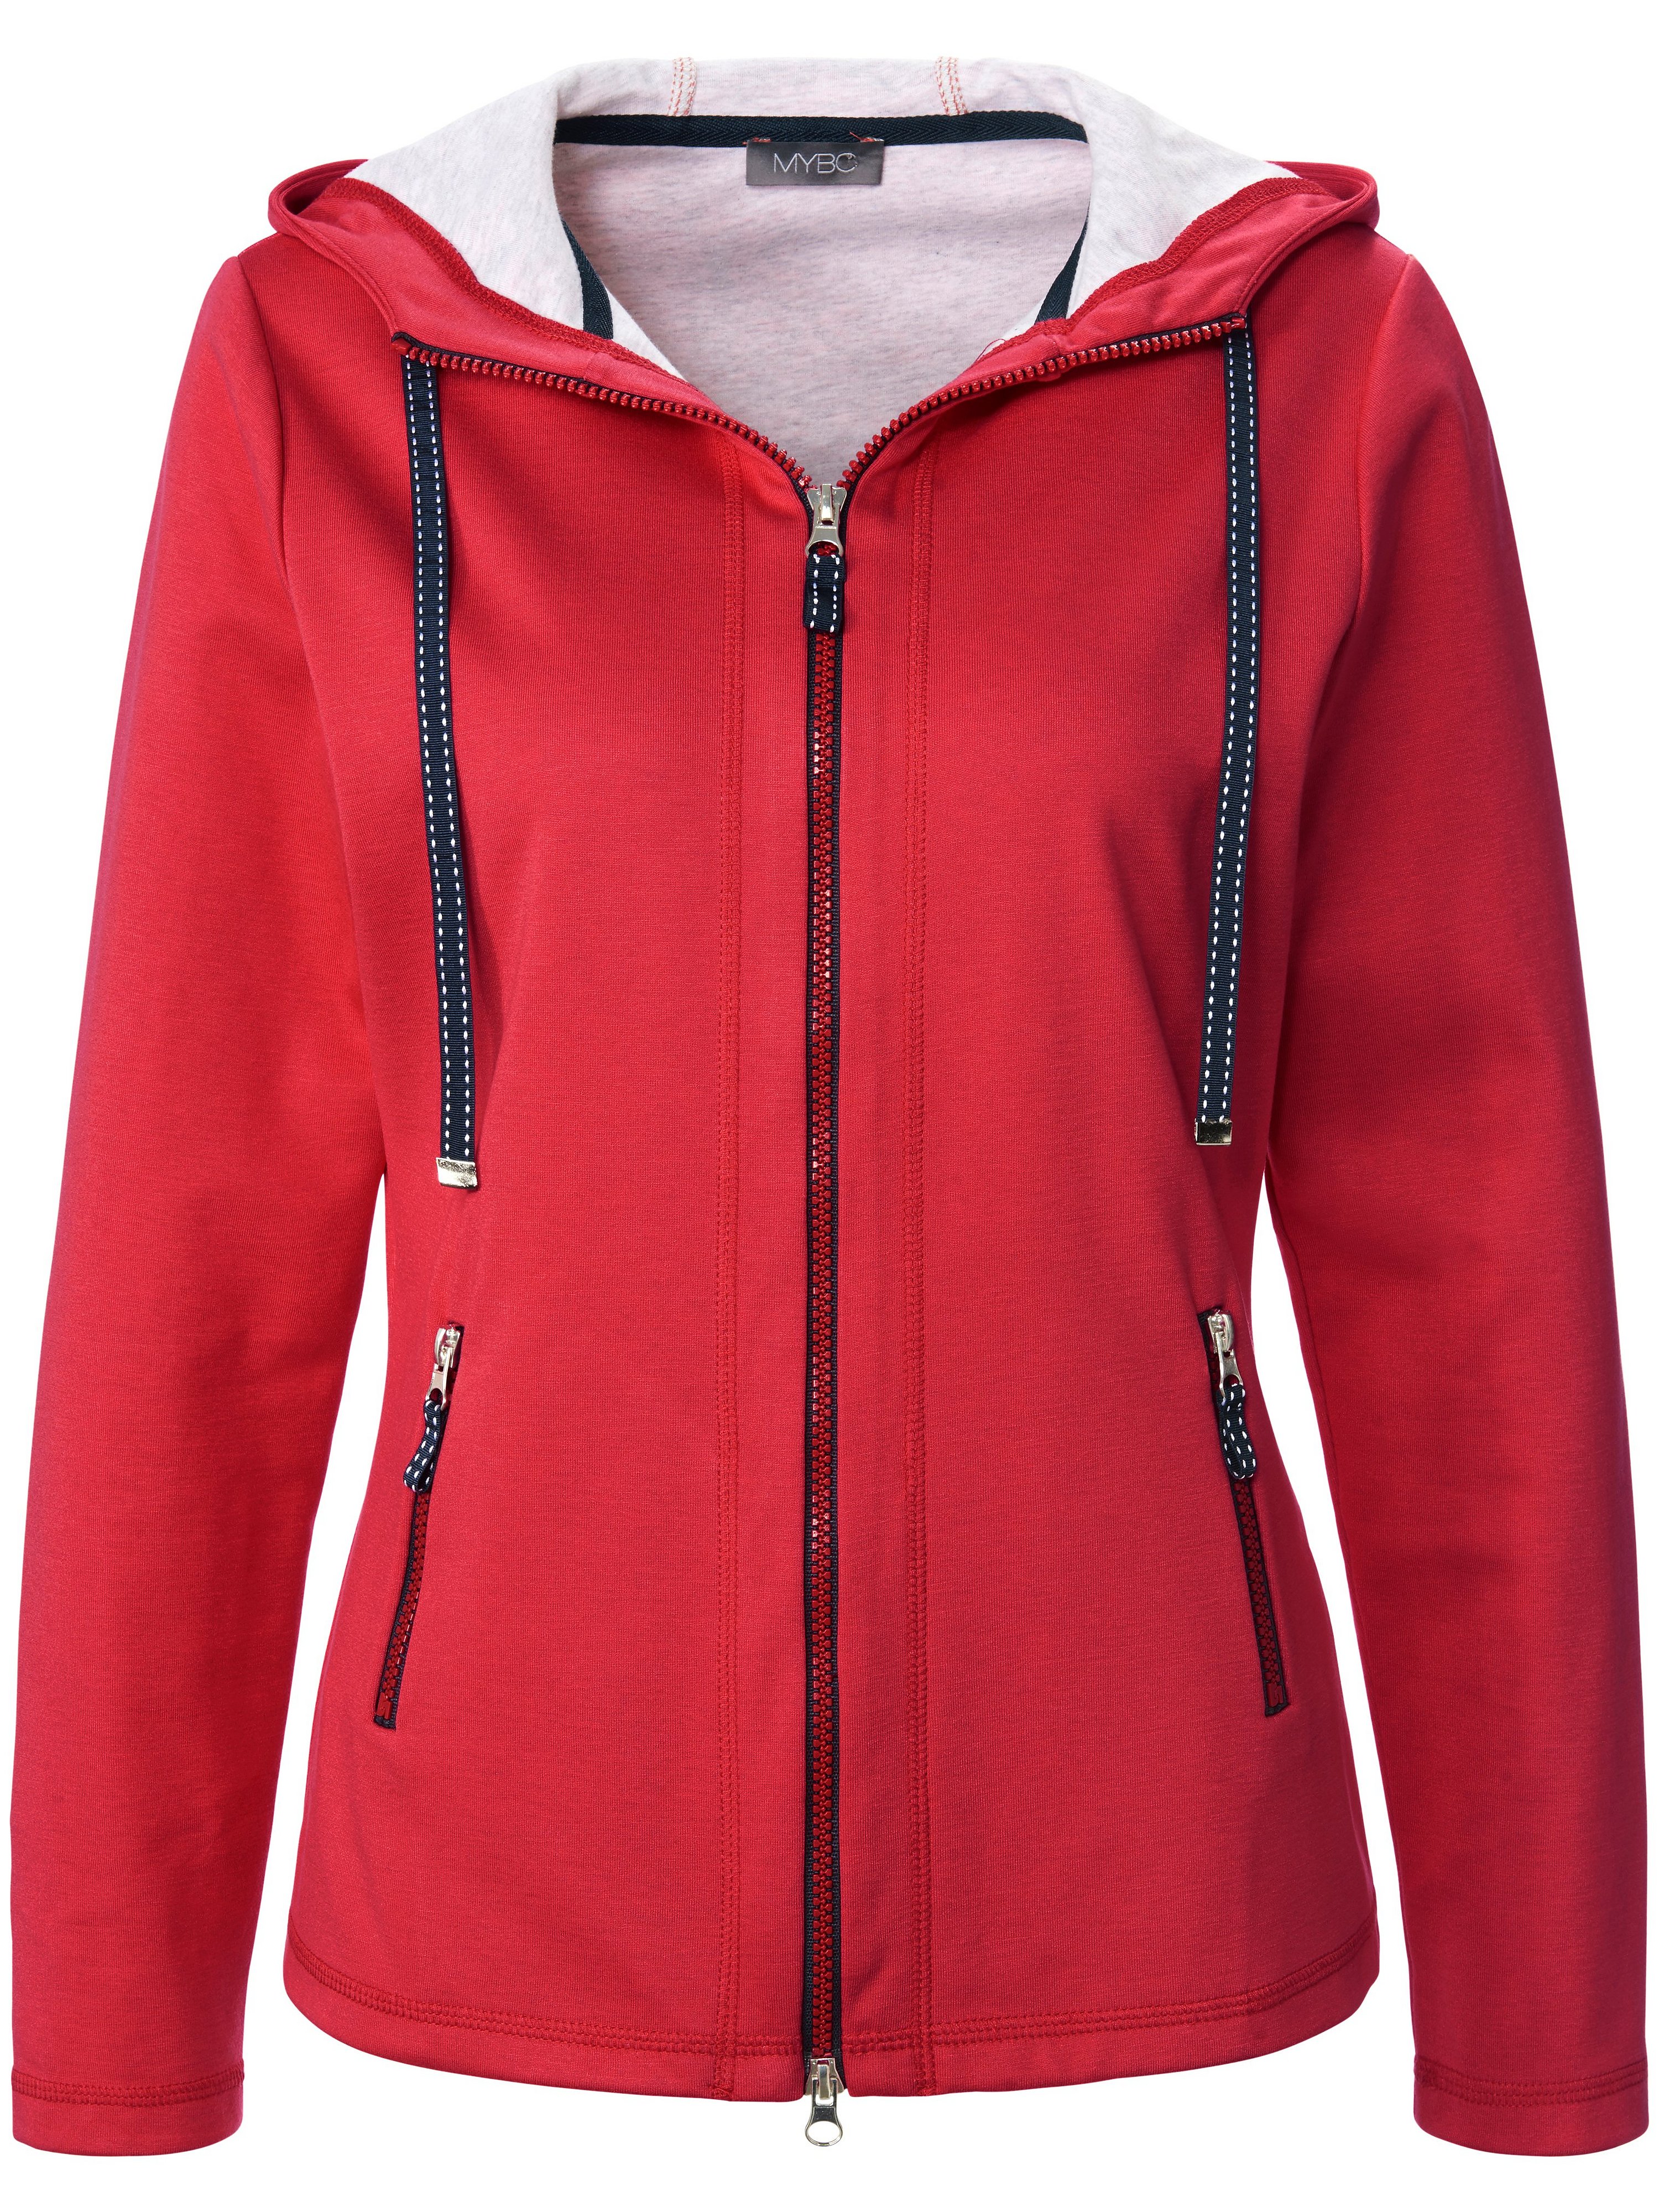 La veste en molleton avec capuche  MYBC rouge